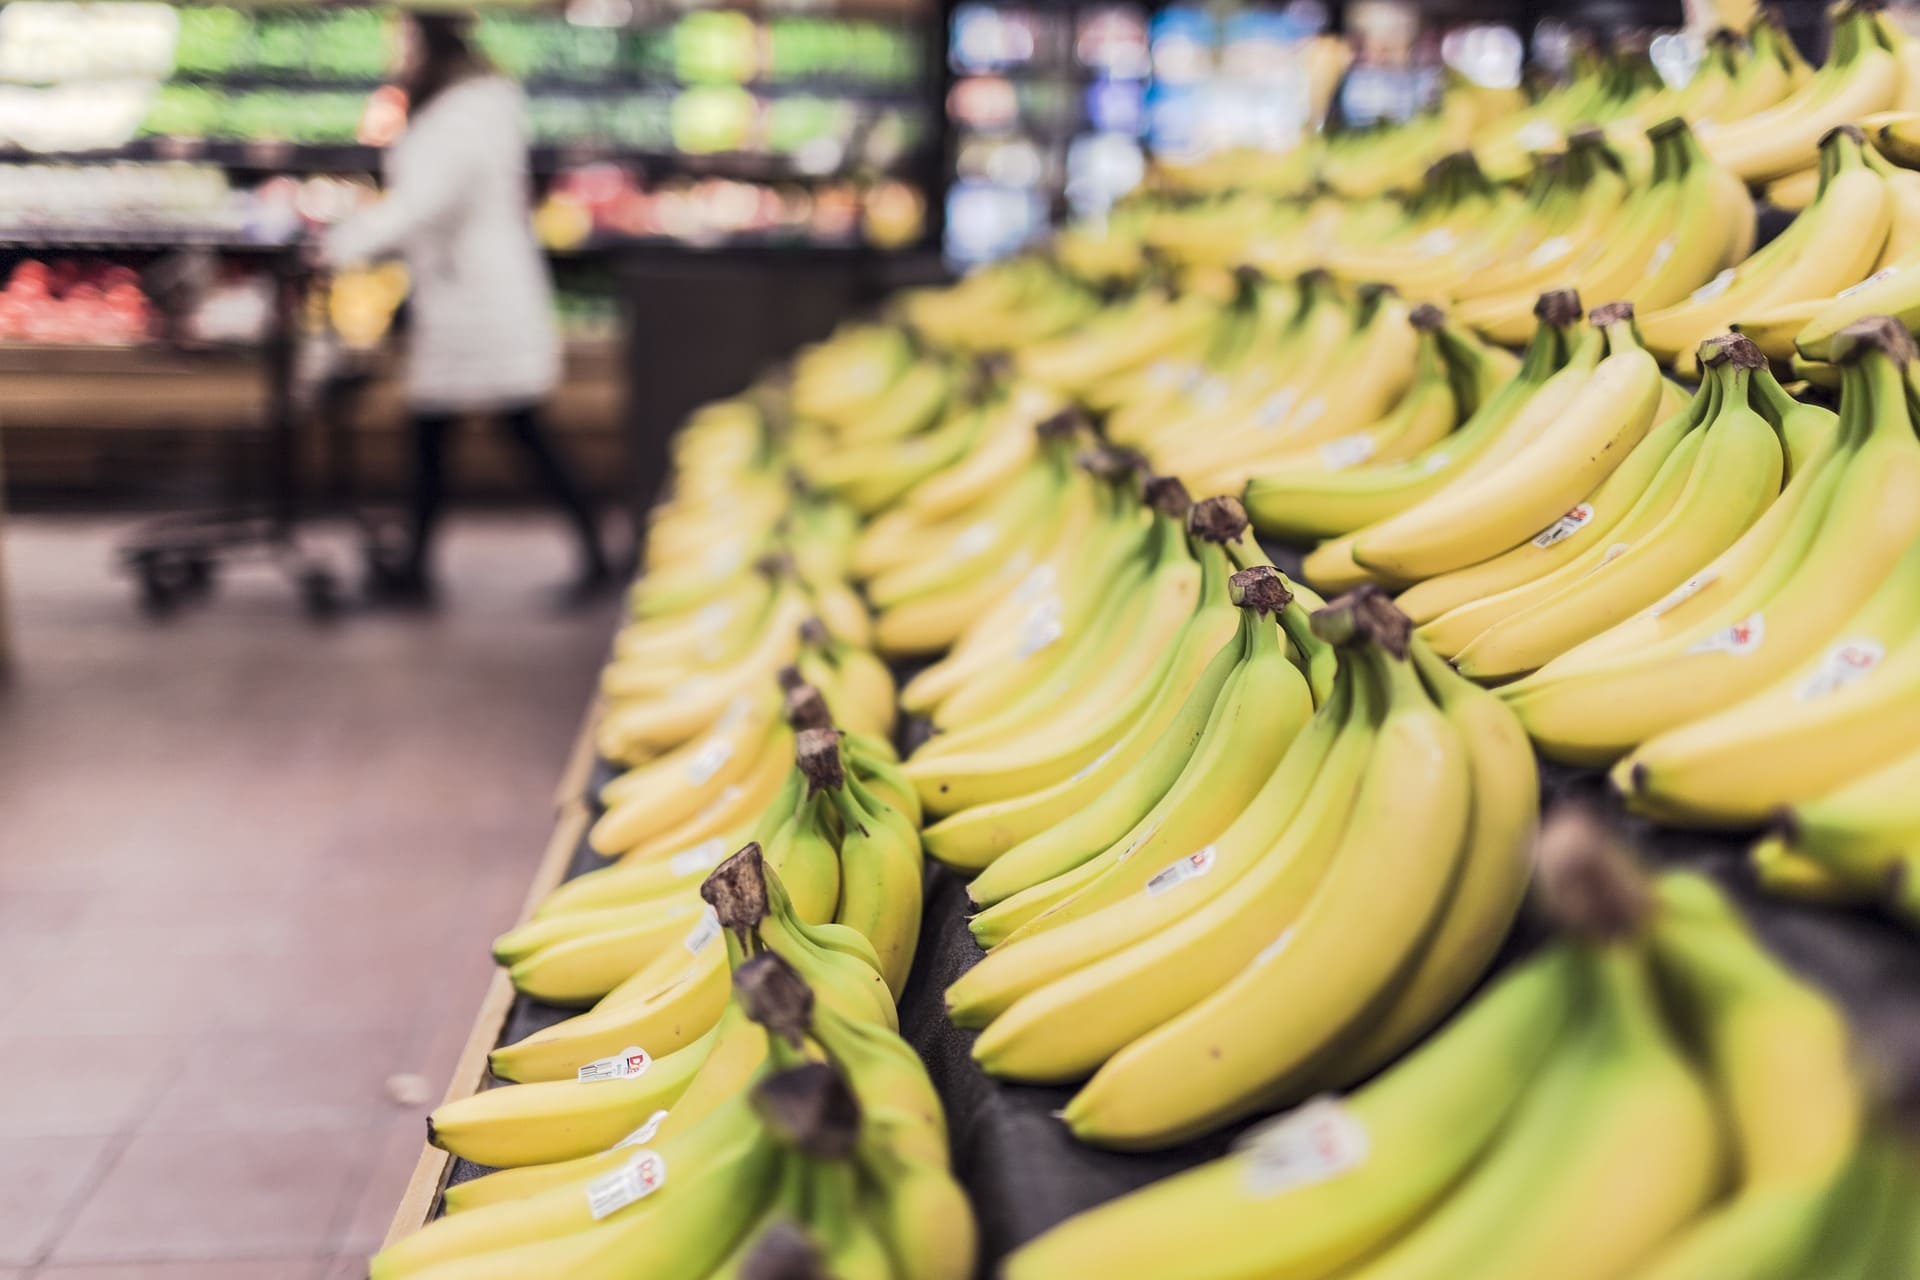 Как правильно хранить бананы, чтобы они не чернели